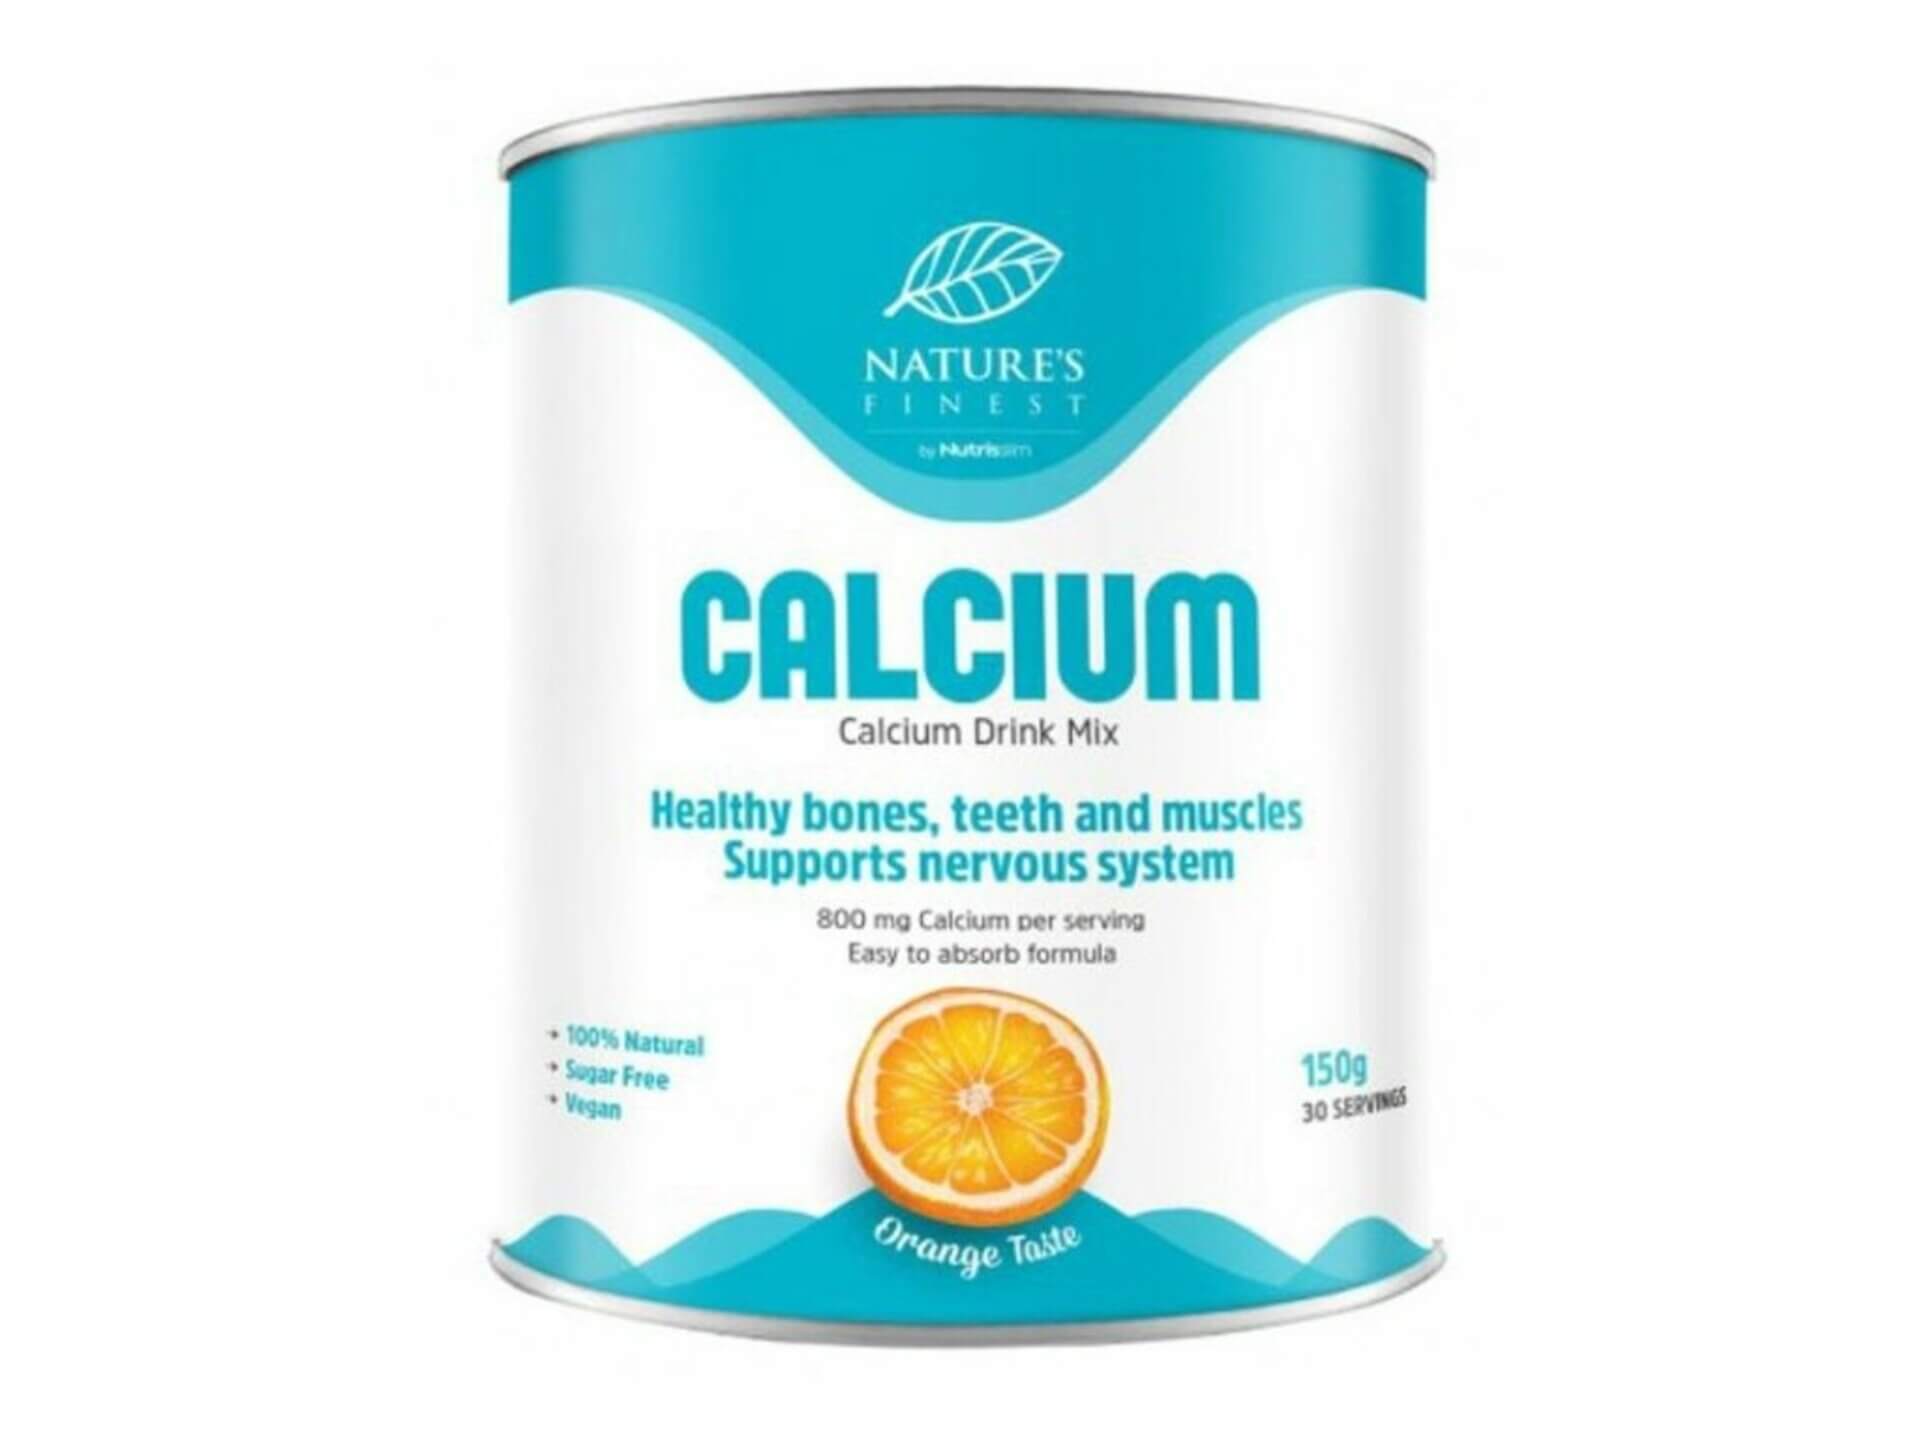 Nutrisslim Calcium 150 g pomaranč